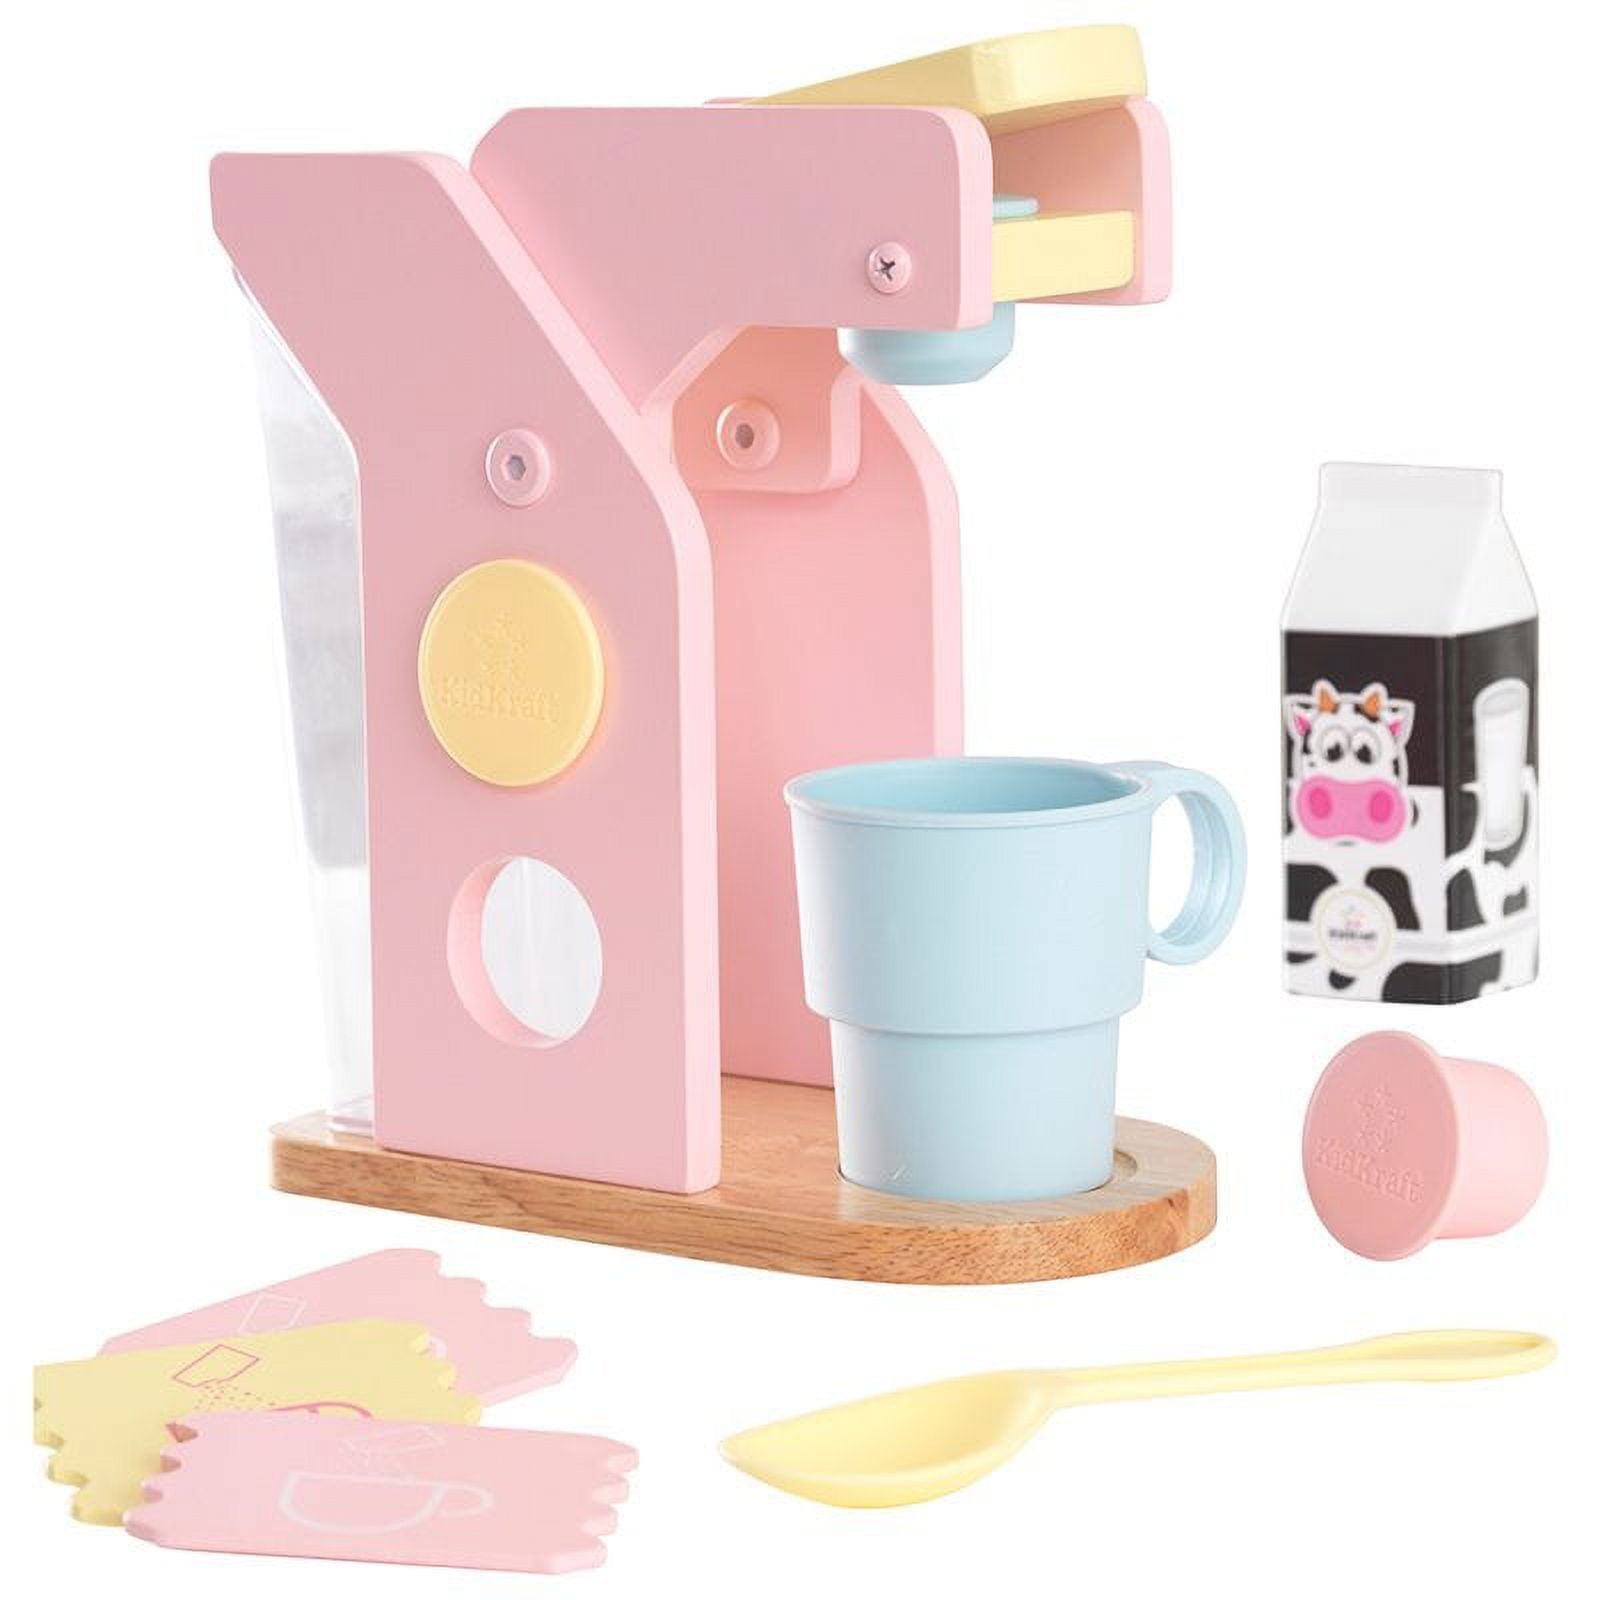 KidKraft Pastel Coffee Set Kids' Toy $7.67 + Free S&H w/ Walmart+ or $35+